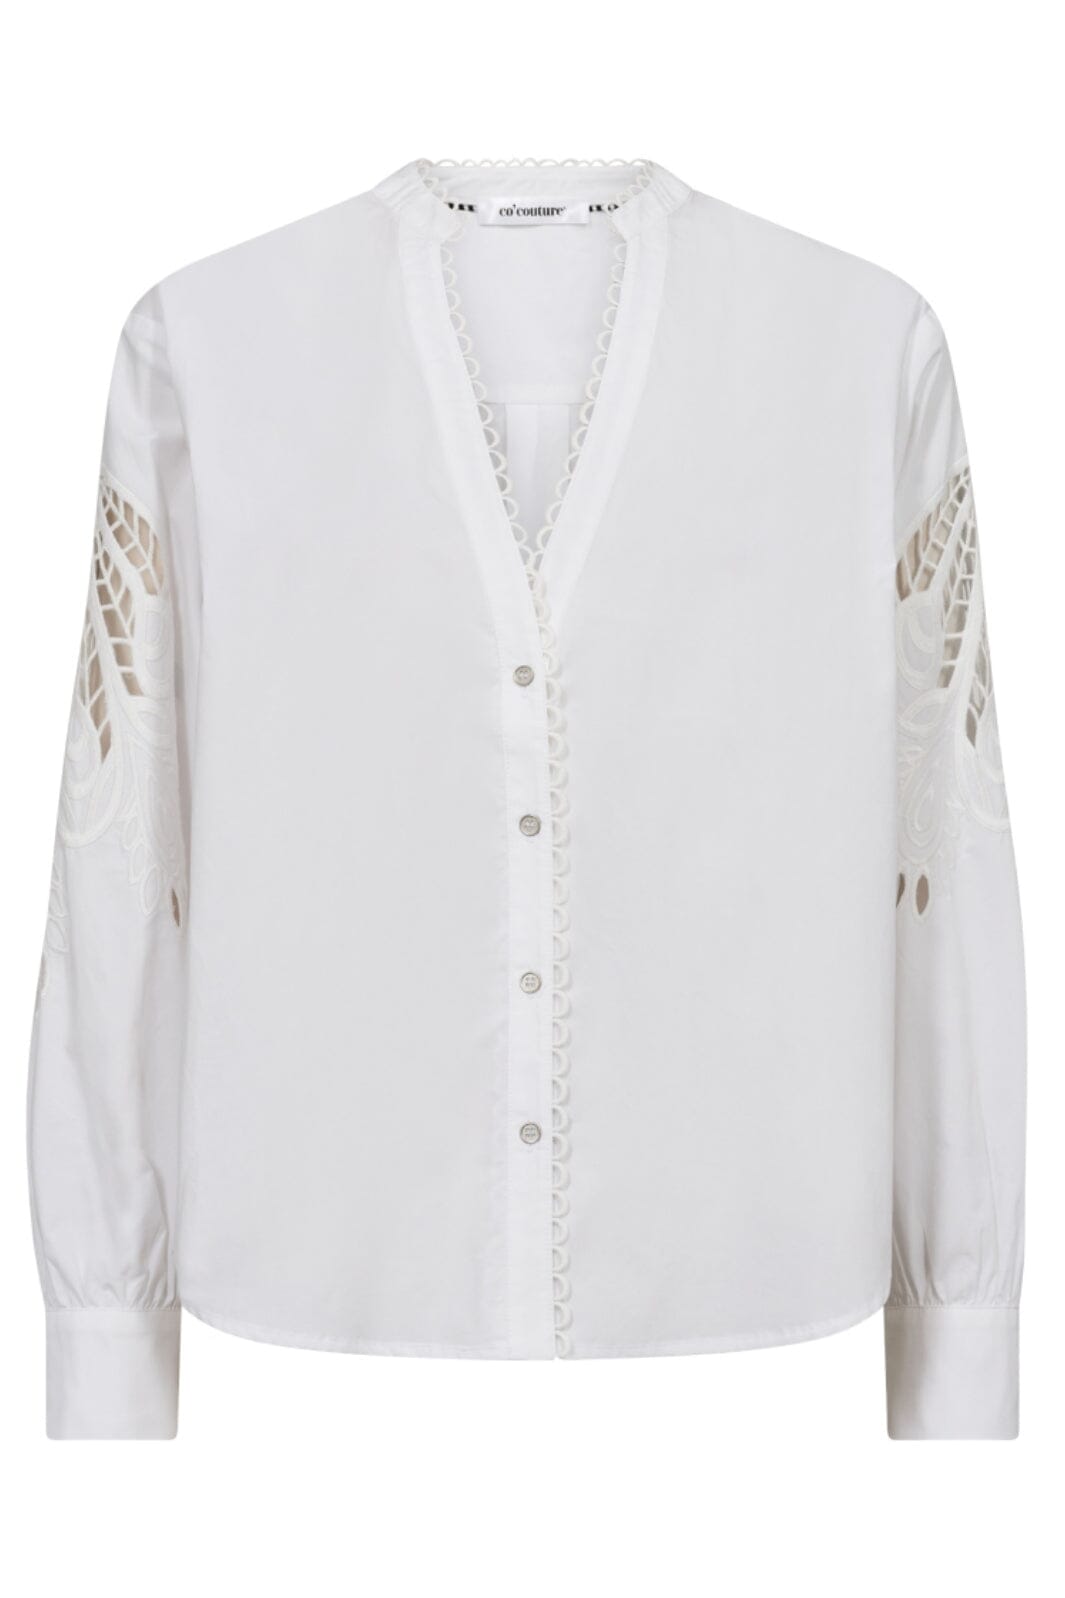 Co´couture - Kellisecc Lace Cut V-Shirt 35551 - 4000 White Skjorter 